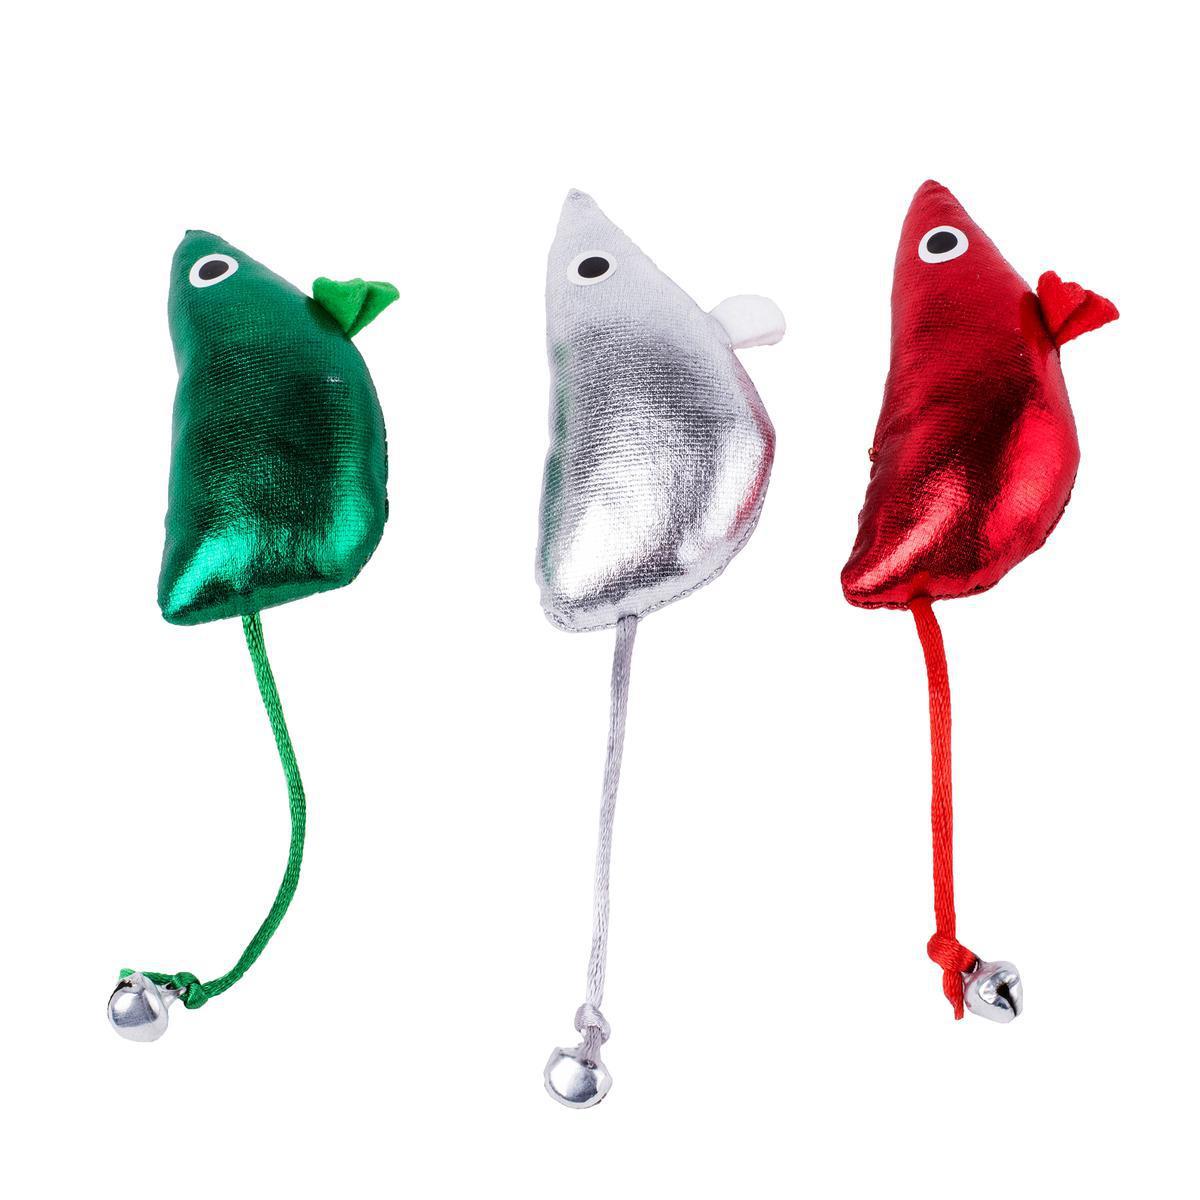 3 jouets pour chat Noël - Plastique - 14 x 3,5 x H 2,5 cm - 9 x 9 x 4,5 cm - Vert, blanc et rouge